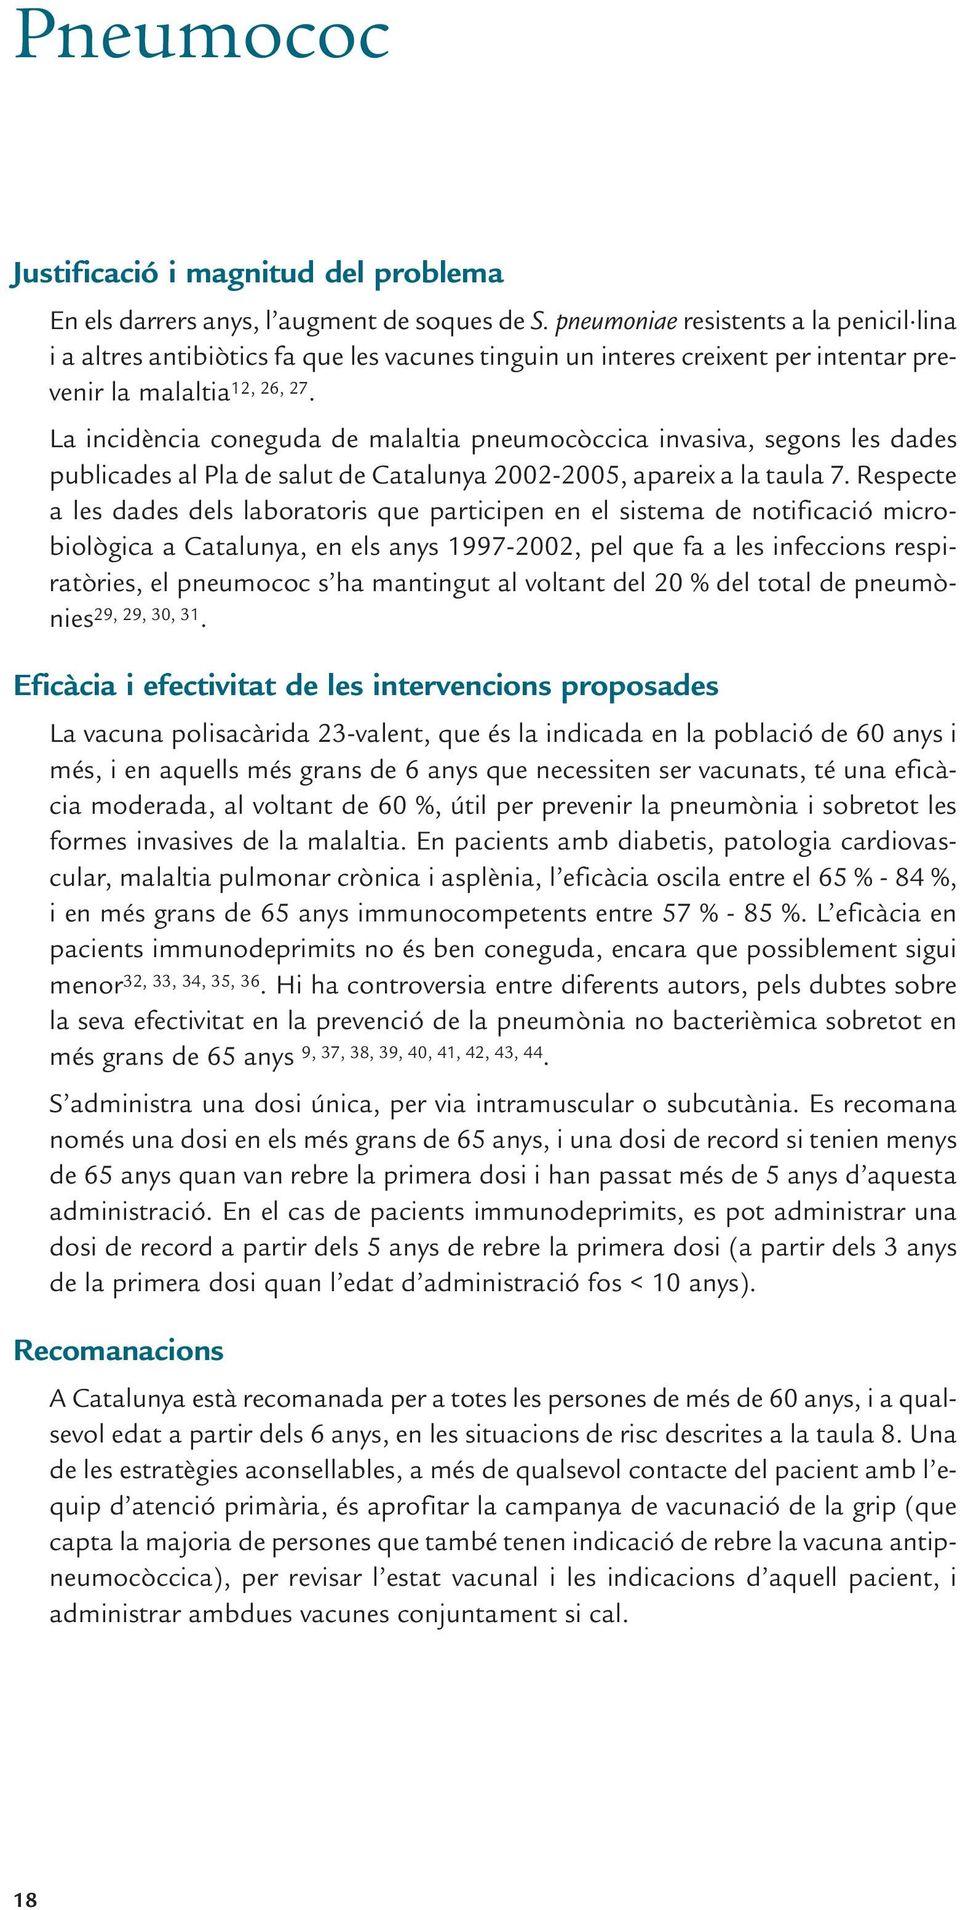 La incidència coneguda de malaltia pneumocòccica invasiva, segons les dades publicades al Pla de salut de Catalunya 2002-2005, apareix a la taula 7.